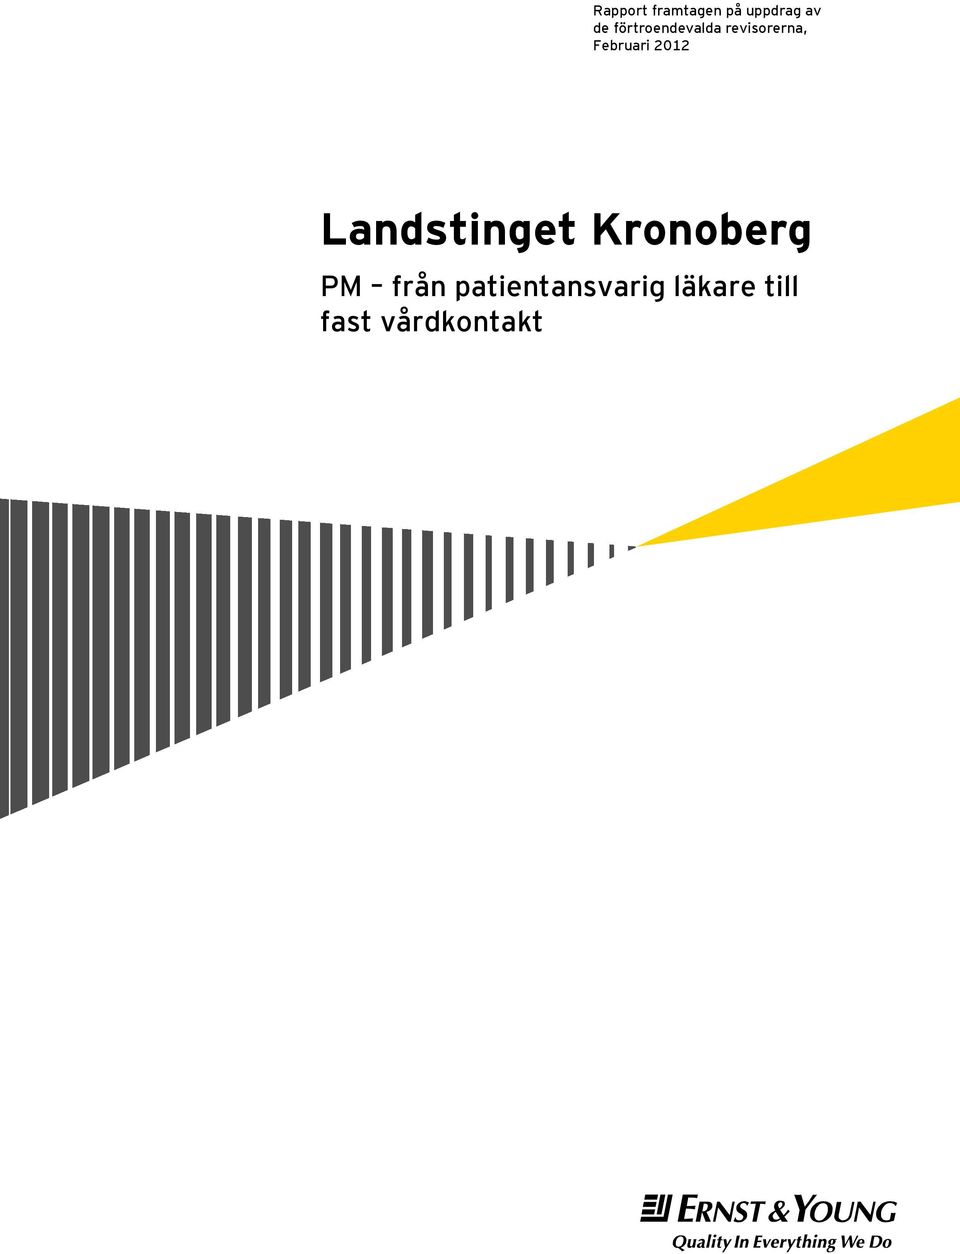 2012 Landstinget Kronoberg PM från